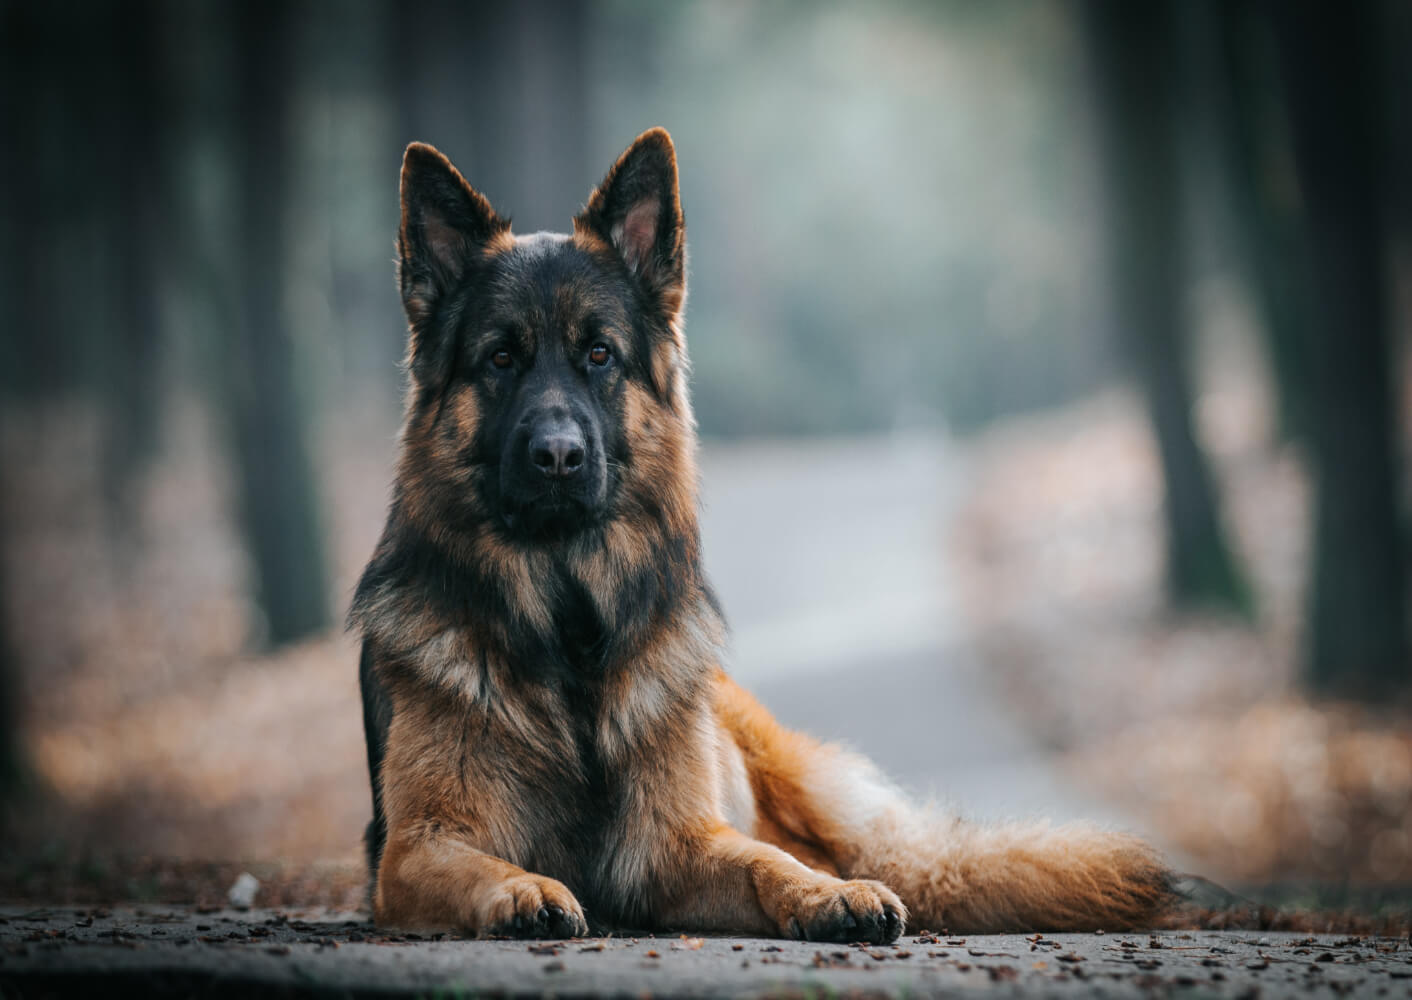 Deutsche Schäferhunde sind anfällig für Gelenkdysplasien in Hüfte und Ellbogen